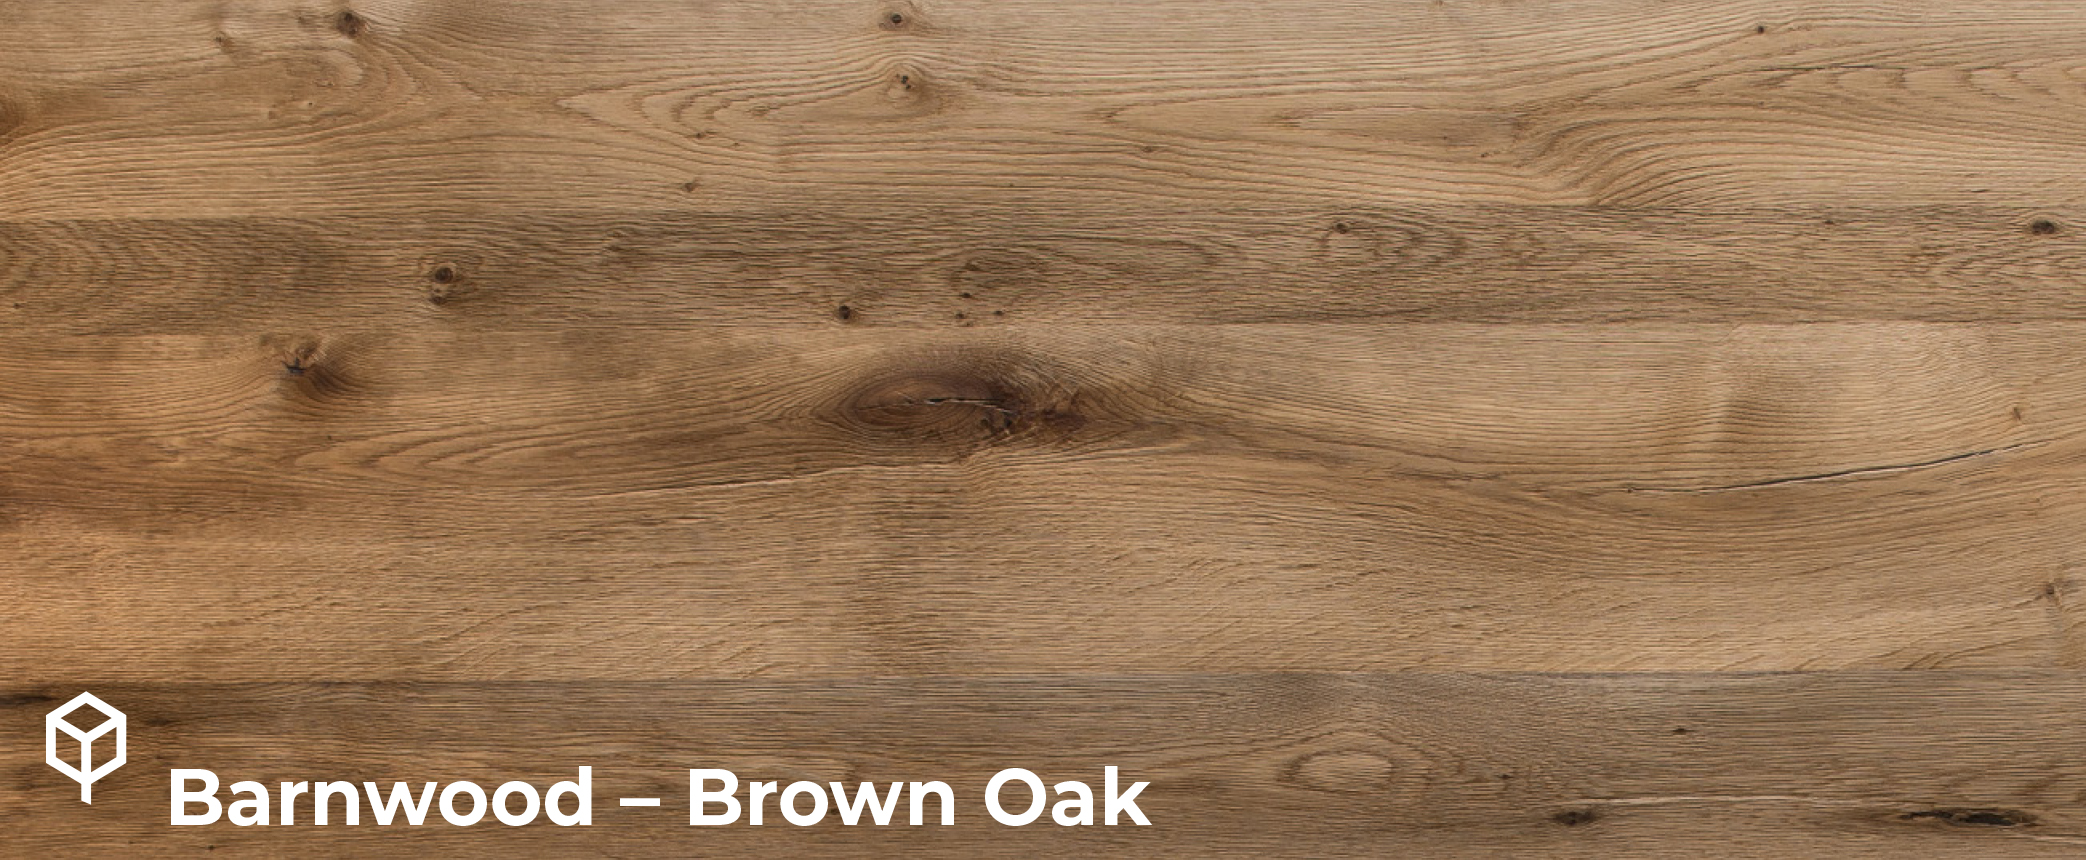 Barnwood Brown Oak veneer